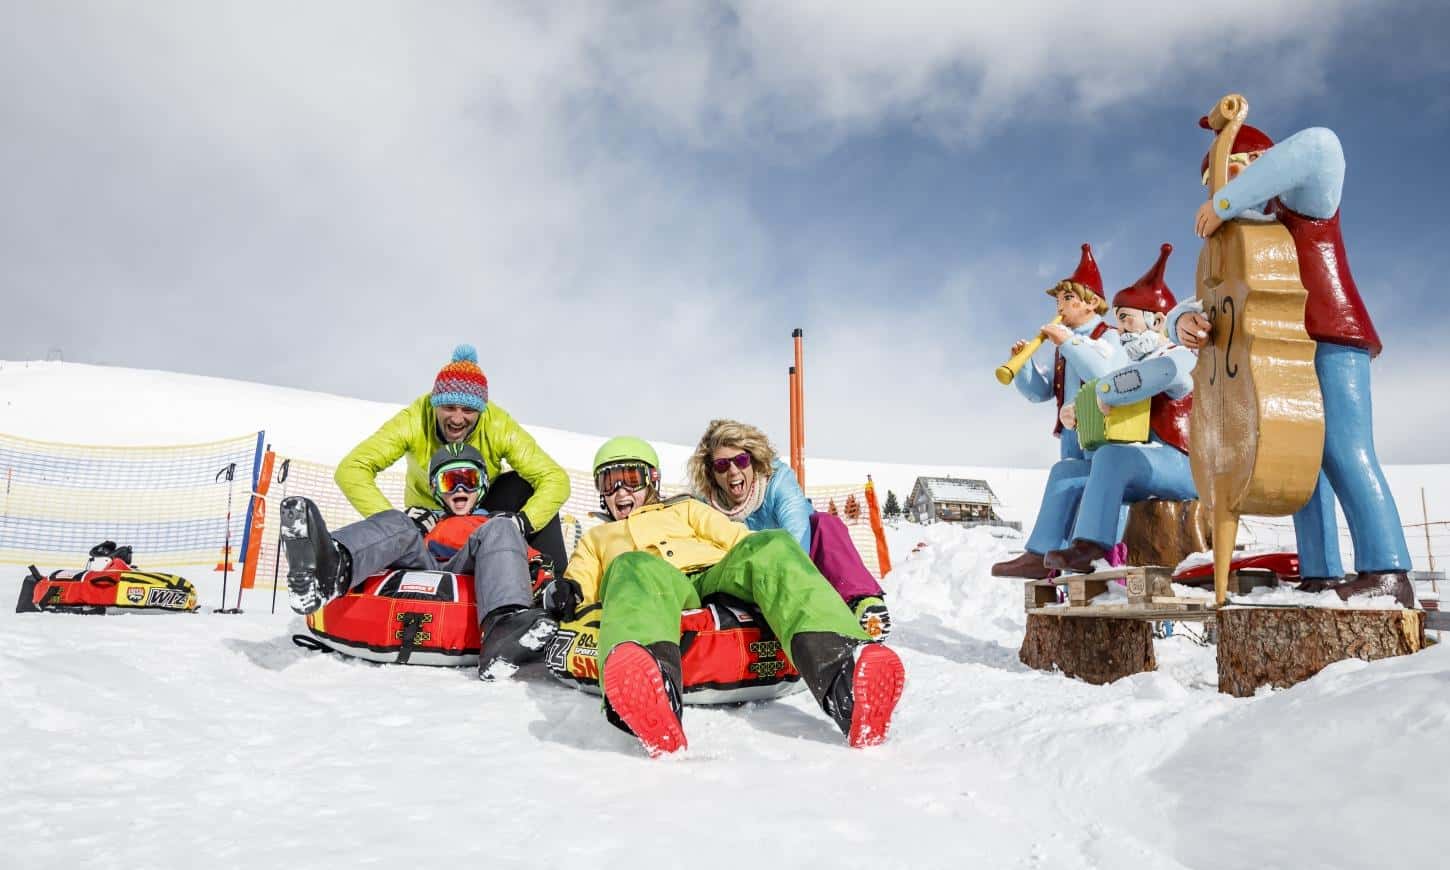 Winterurlaub mit der Familie am Falkert in Heidis Schneealm - kostenlos mit Winter Kärnten Card